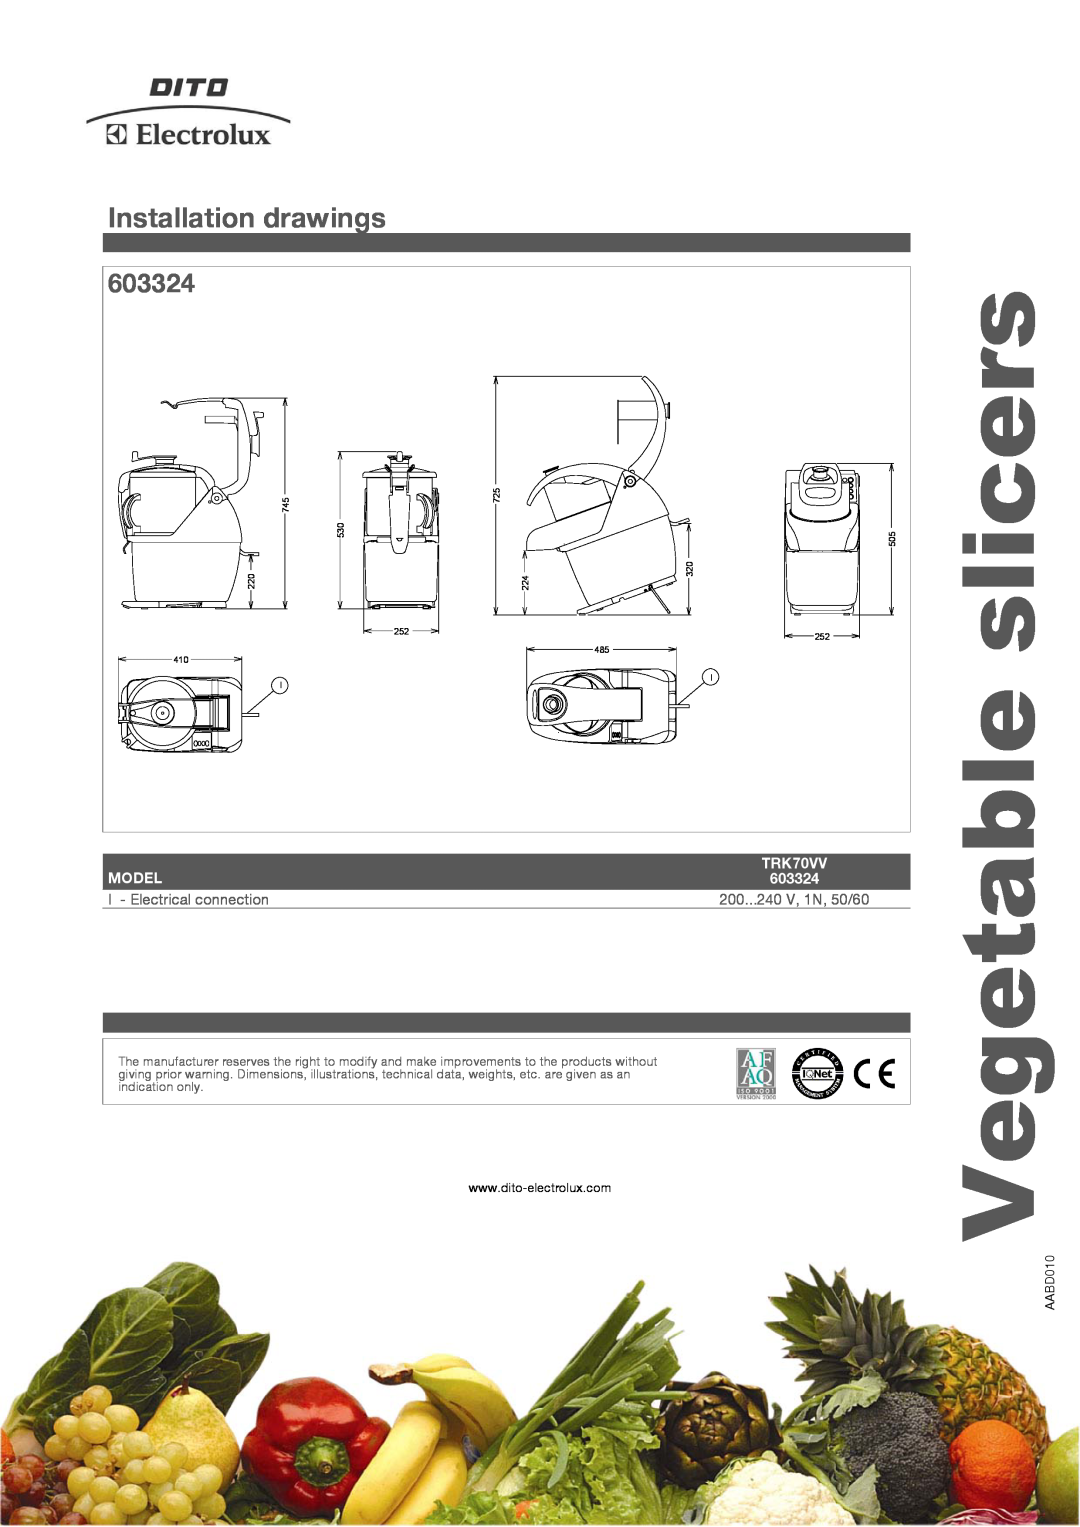 Electrolux TRK70VV manual Installation drawings, 603324, slicers, Vegetable, Model 